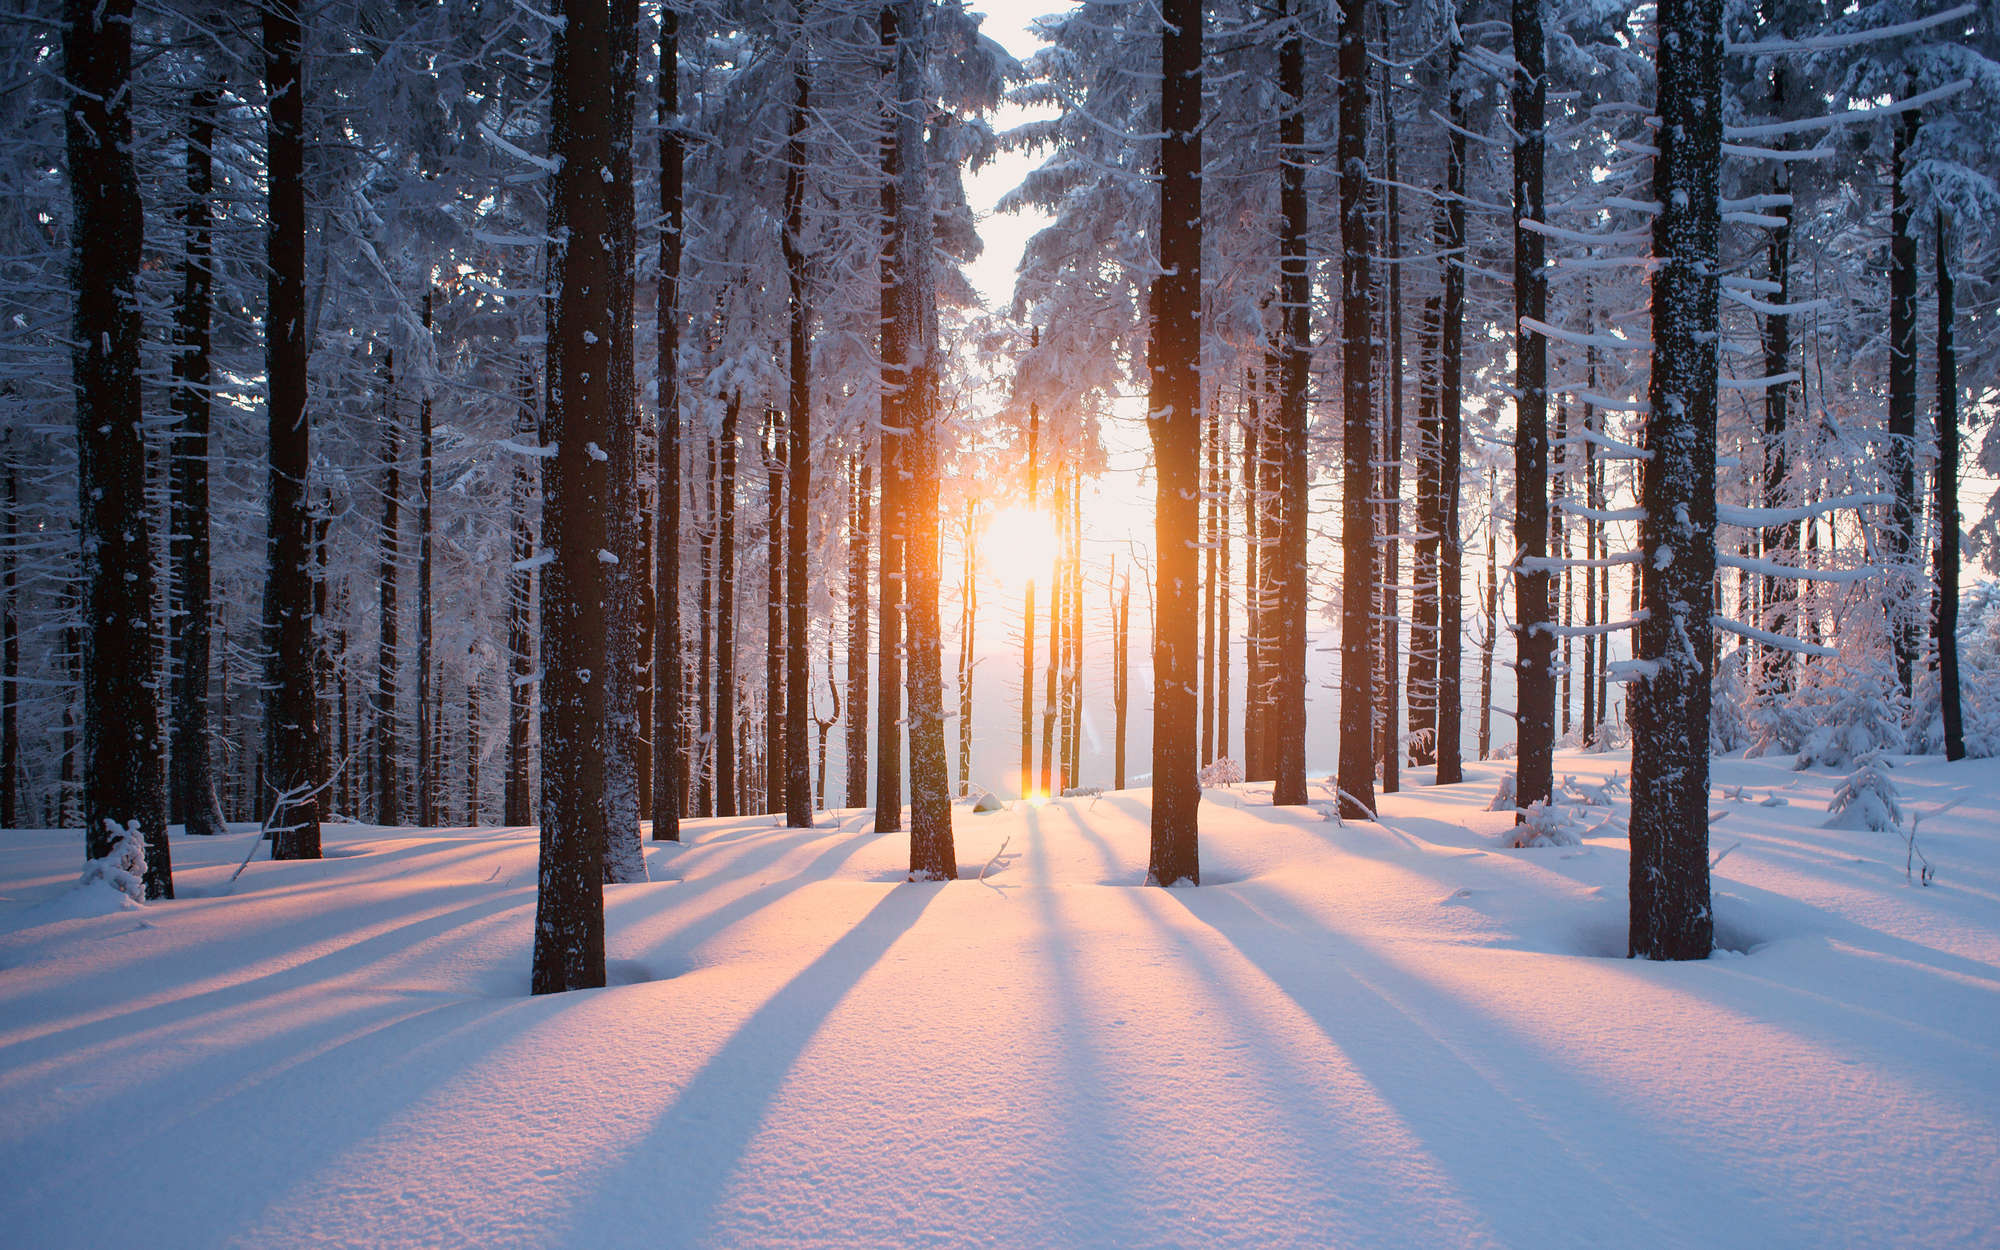             Fotomural Nieve en bosque invernal - Tela sin tejer con textura
        